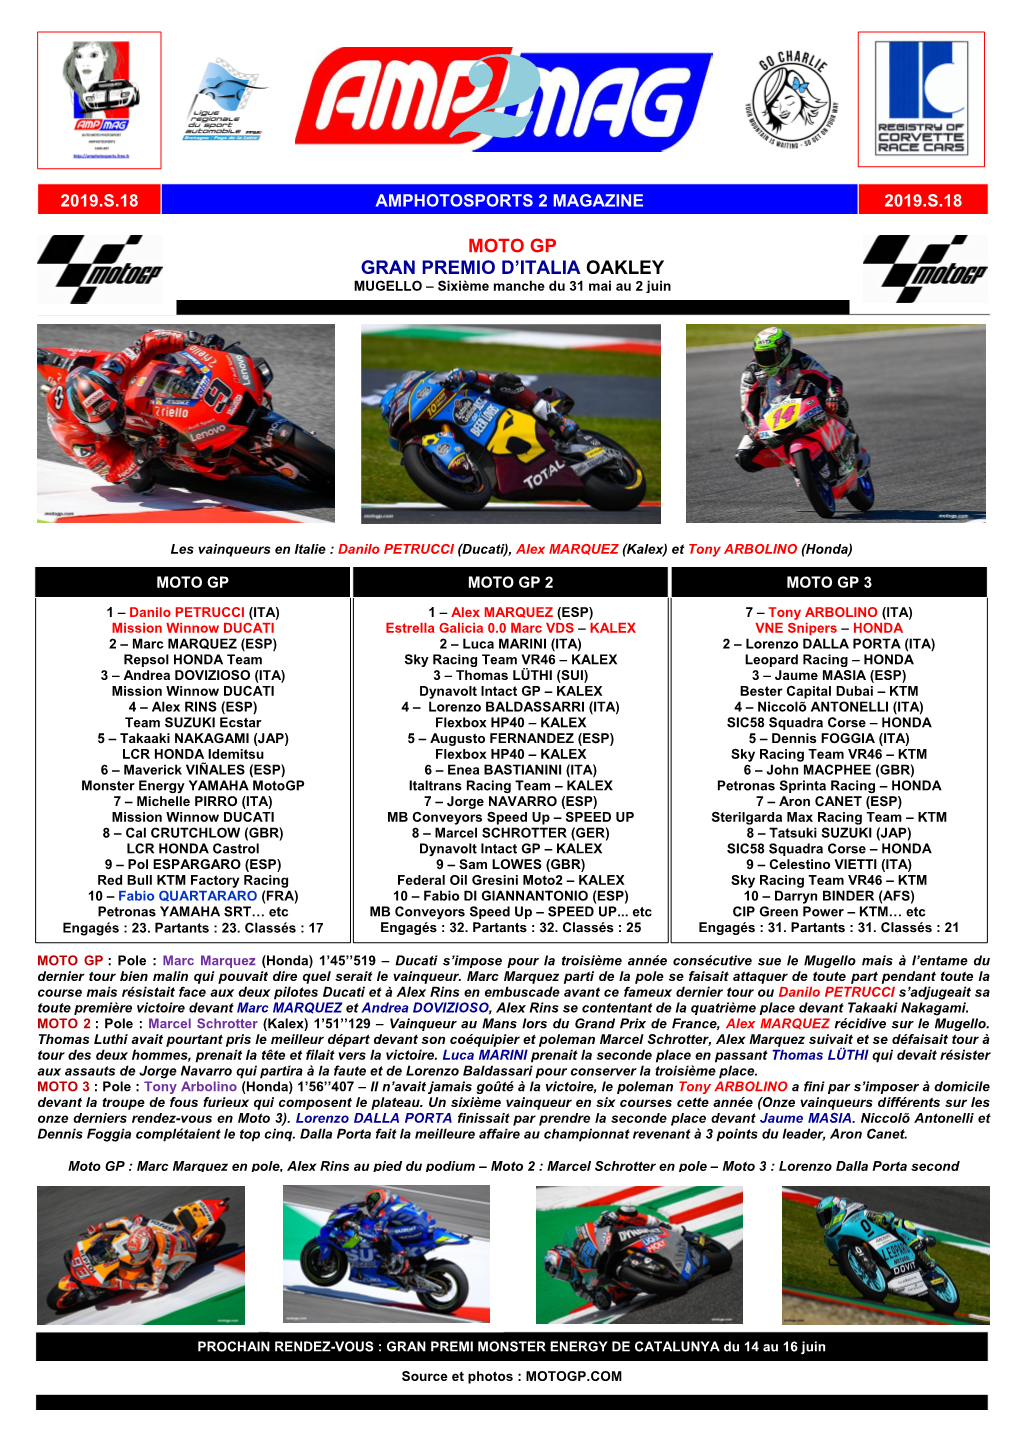 Moto Gp Gran Premio D'italia Oakley